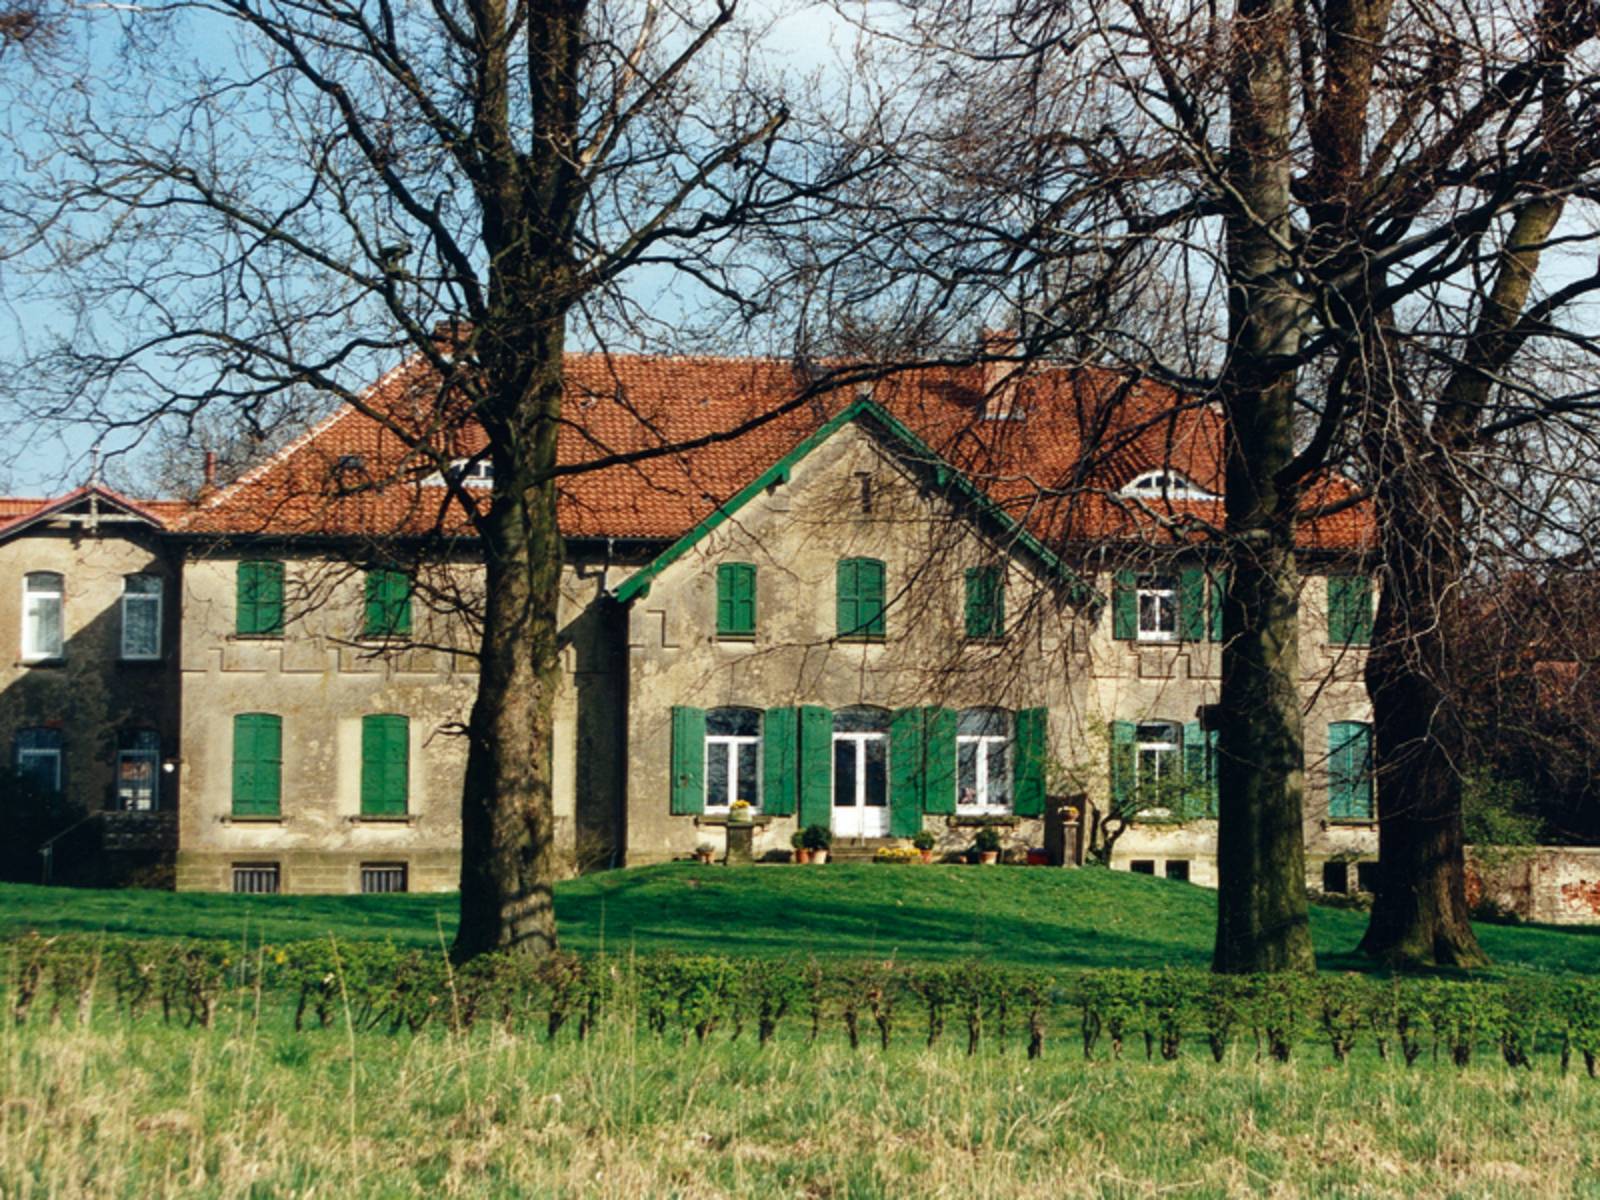 Gutshaus mit grünen Fensterläden, im Vordergrund Wiese, alte unbelaubte Bäume und ein kleiner Hügel, bei blauem Himmel und Sonnenschein